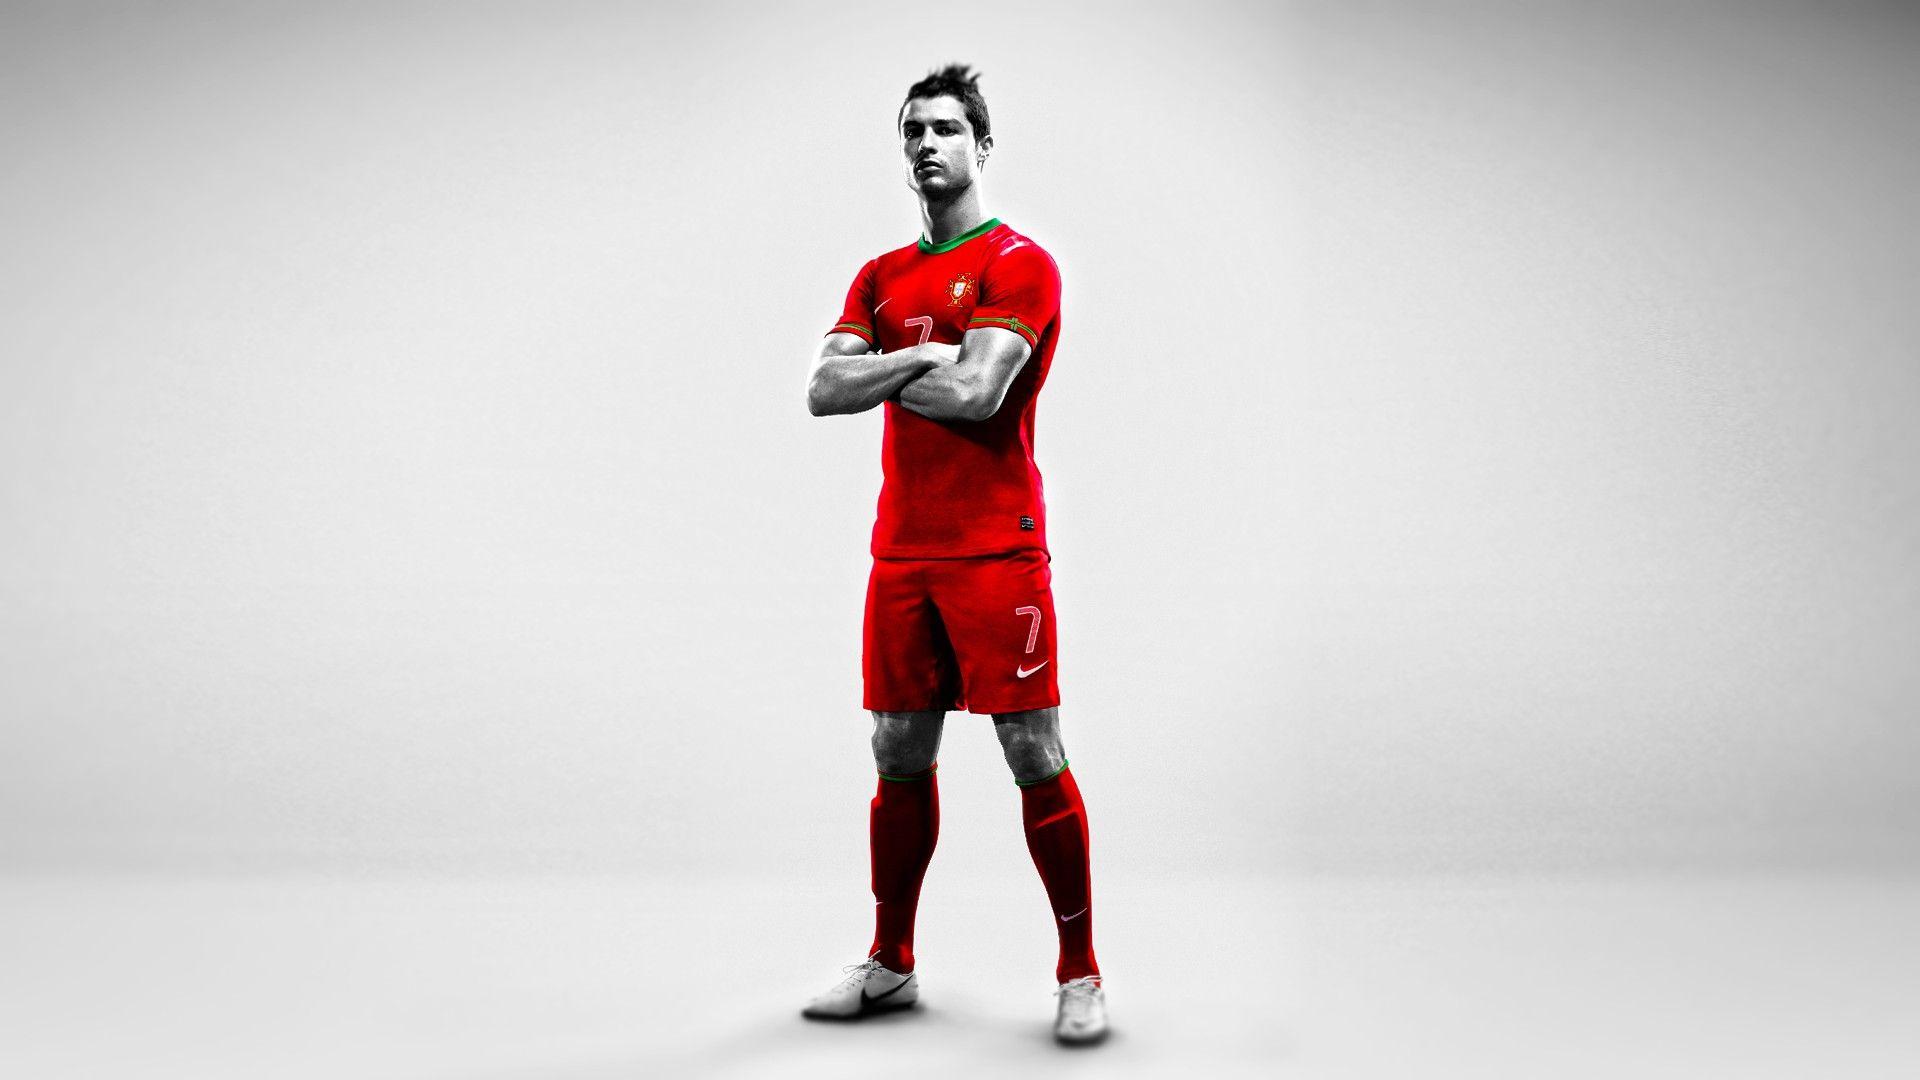 Download Free HD 1080p Wallpaper of Cristiano Ronaldo